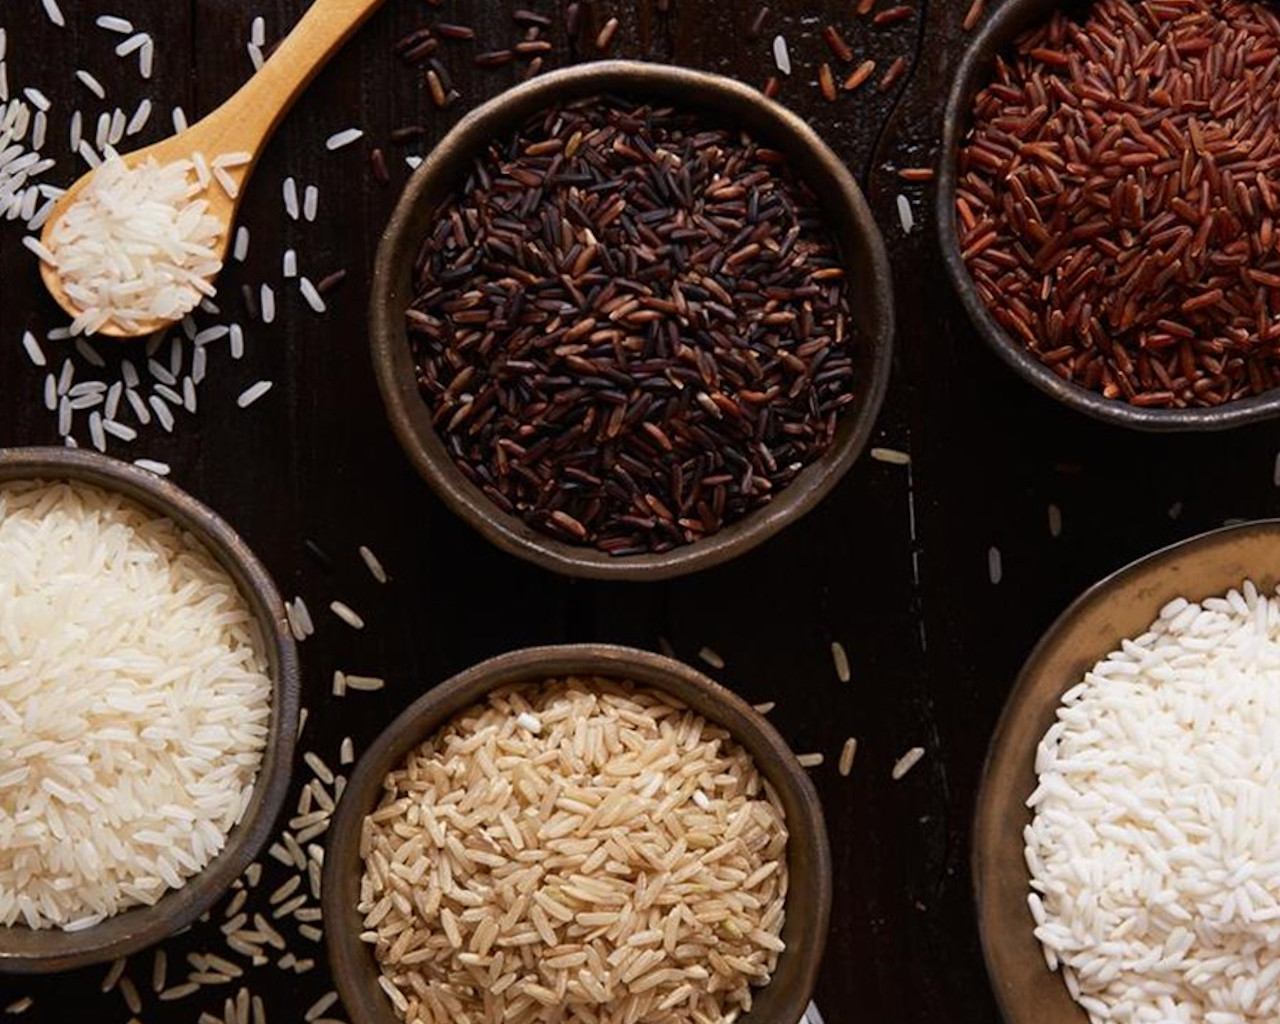 ρυζι,ρυζι για γεμιστα,ρυζι καρολινα,ρυζι πιλαφι,ρυζι μπασματι,ρυζι θερμιδεσ,ρυζι συνταγη,ρυζι με μανιταρια,ρυζι για ριζοτο